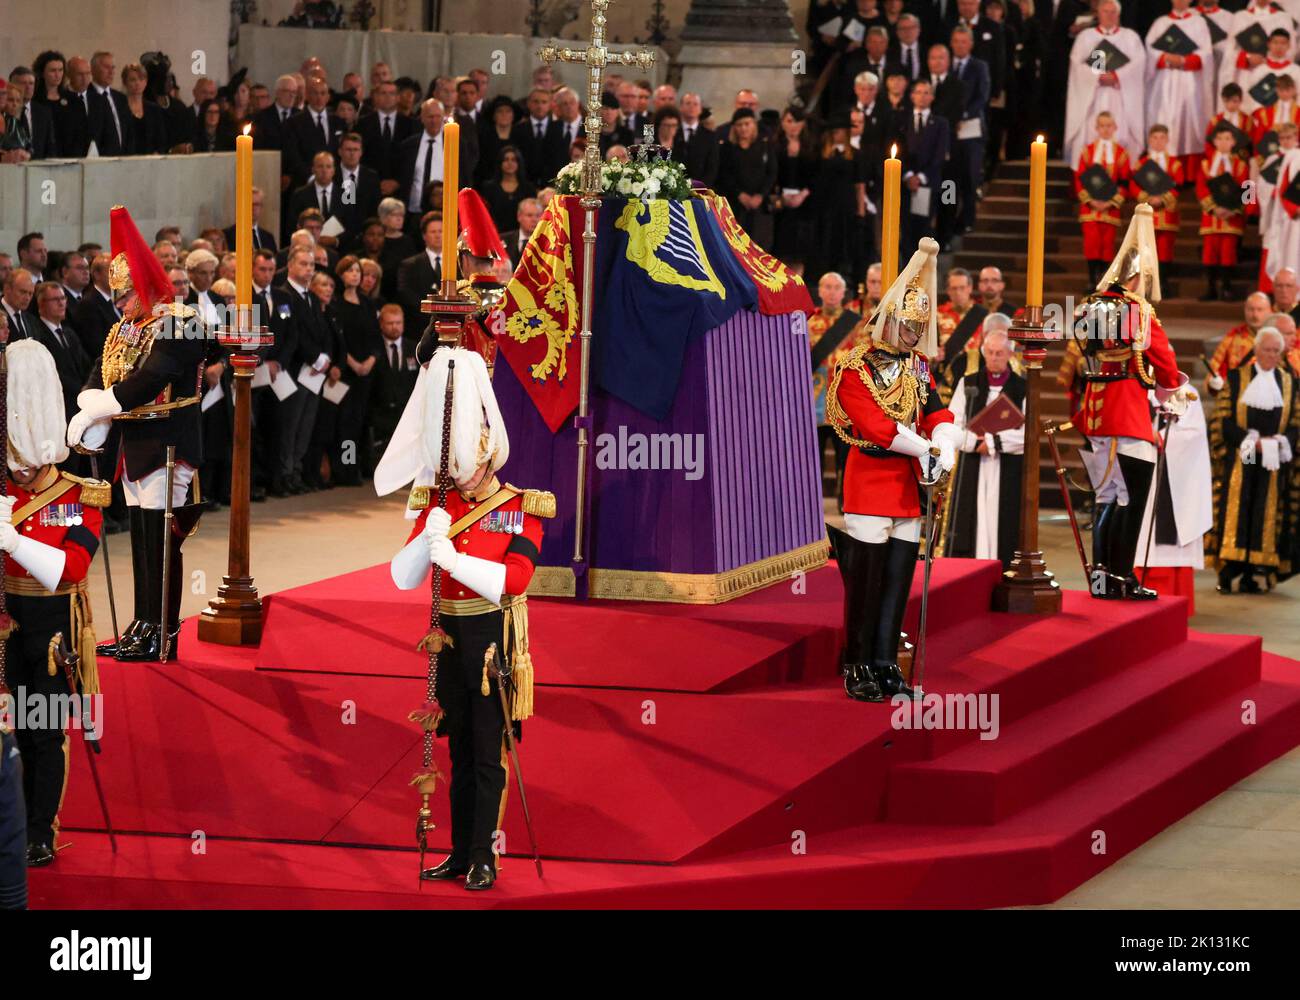 Der Sarg von Königin Elizabeth II. In der Westminster Hall, London, wo er vor ihrer Beerdigung am Montag in einem Zustand liegen wird. Bilddatum: Mittwoch, 14. September 2022. Stockfoto